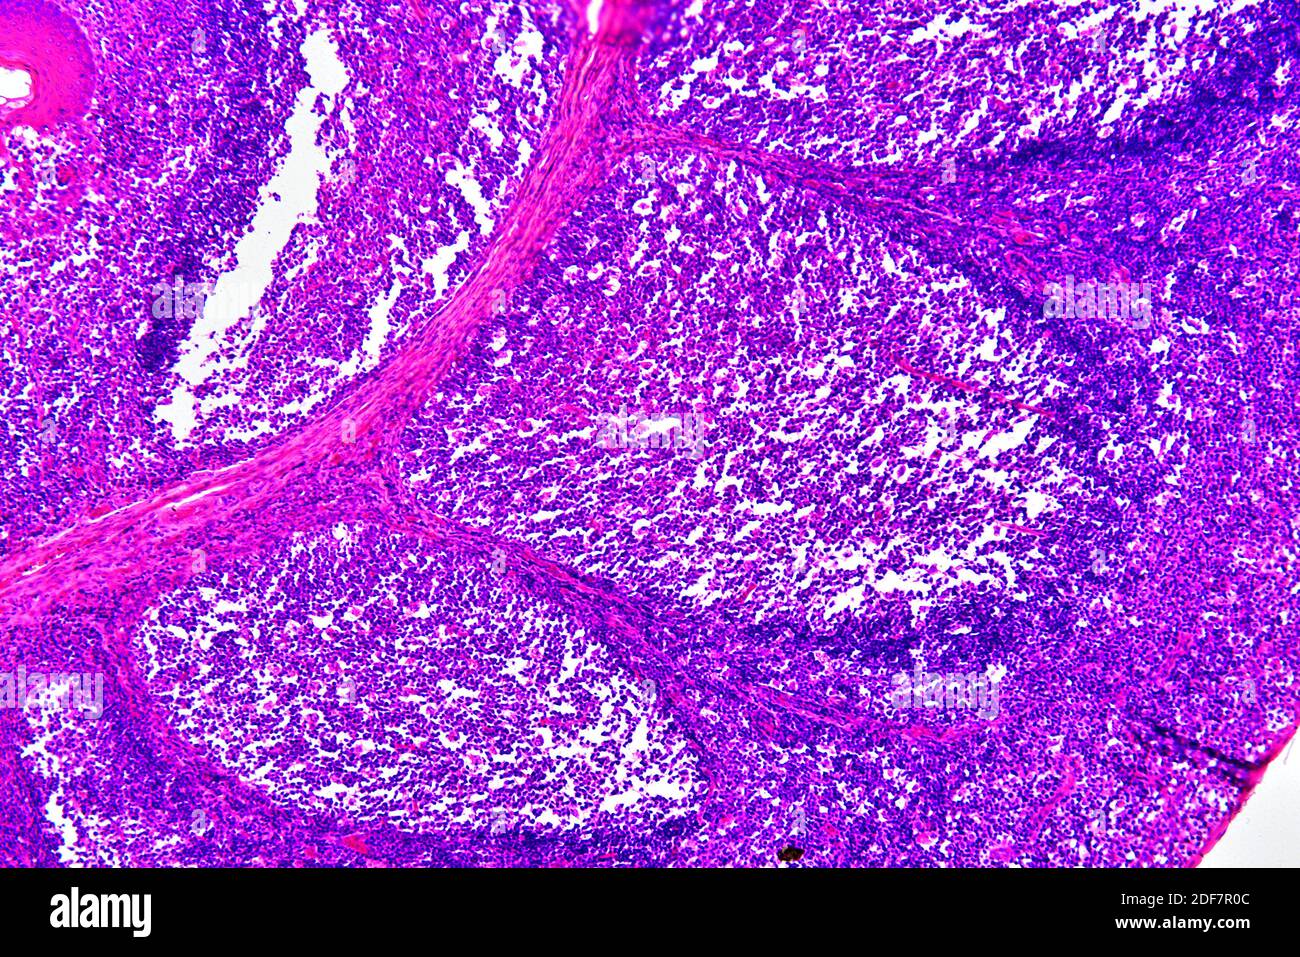 Humaner tonsillen-Abschnitt mit kreisförmigen lymphoiden Follikeln und sekretorischen Drüsen. Helle Mikrographie, Hämatoxylin-Eosin-Färbung. X75 beim Drucken Stockfoto